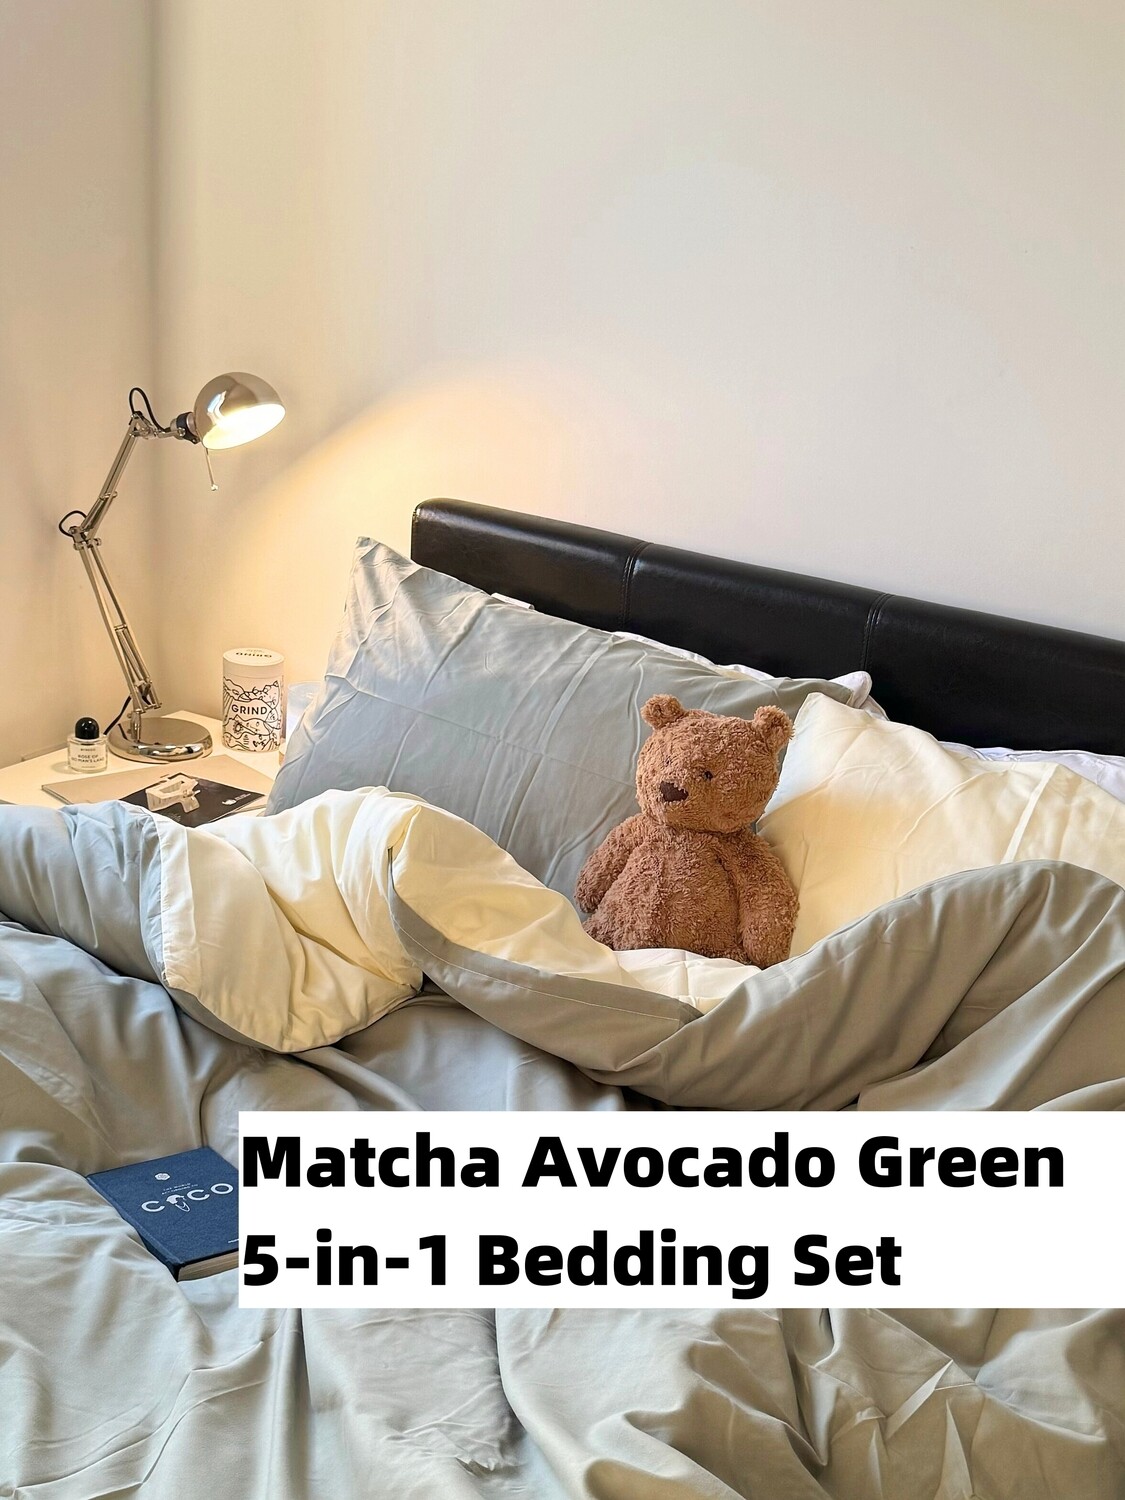 水洗磨毛5合一床品礼包抹茶牛油果绿色(被子、枕头、床笠、套件、床垫保护套)